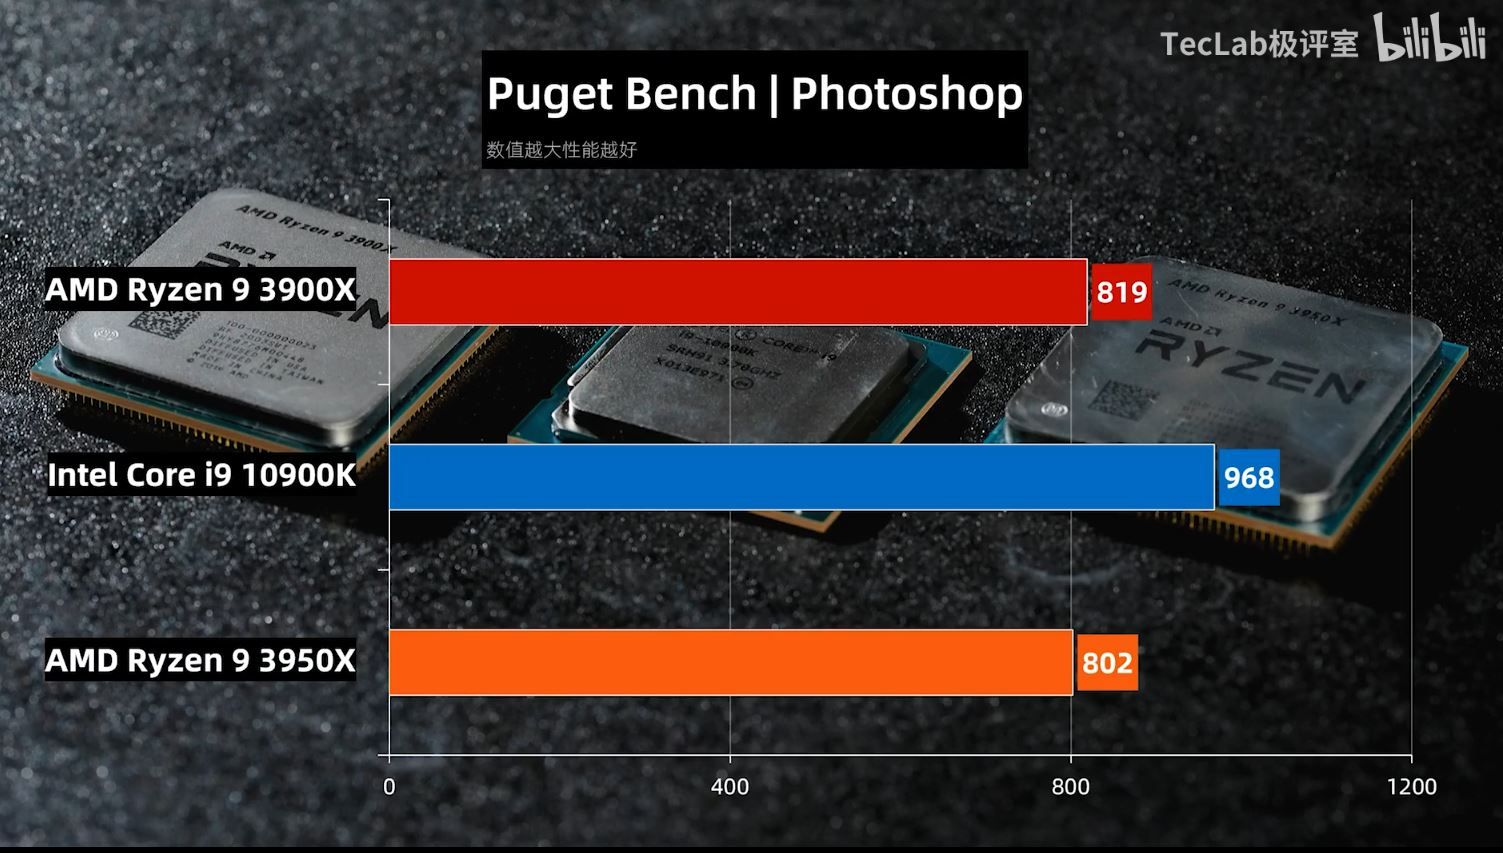 หลุดผลทดสอบ Intel Core i9-10900K เทียบกับ AMD Ryzen 9 3900X และ 3950X ทั้งการทำงานและเล่นเกม